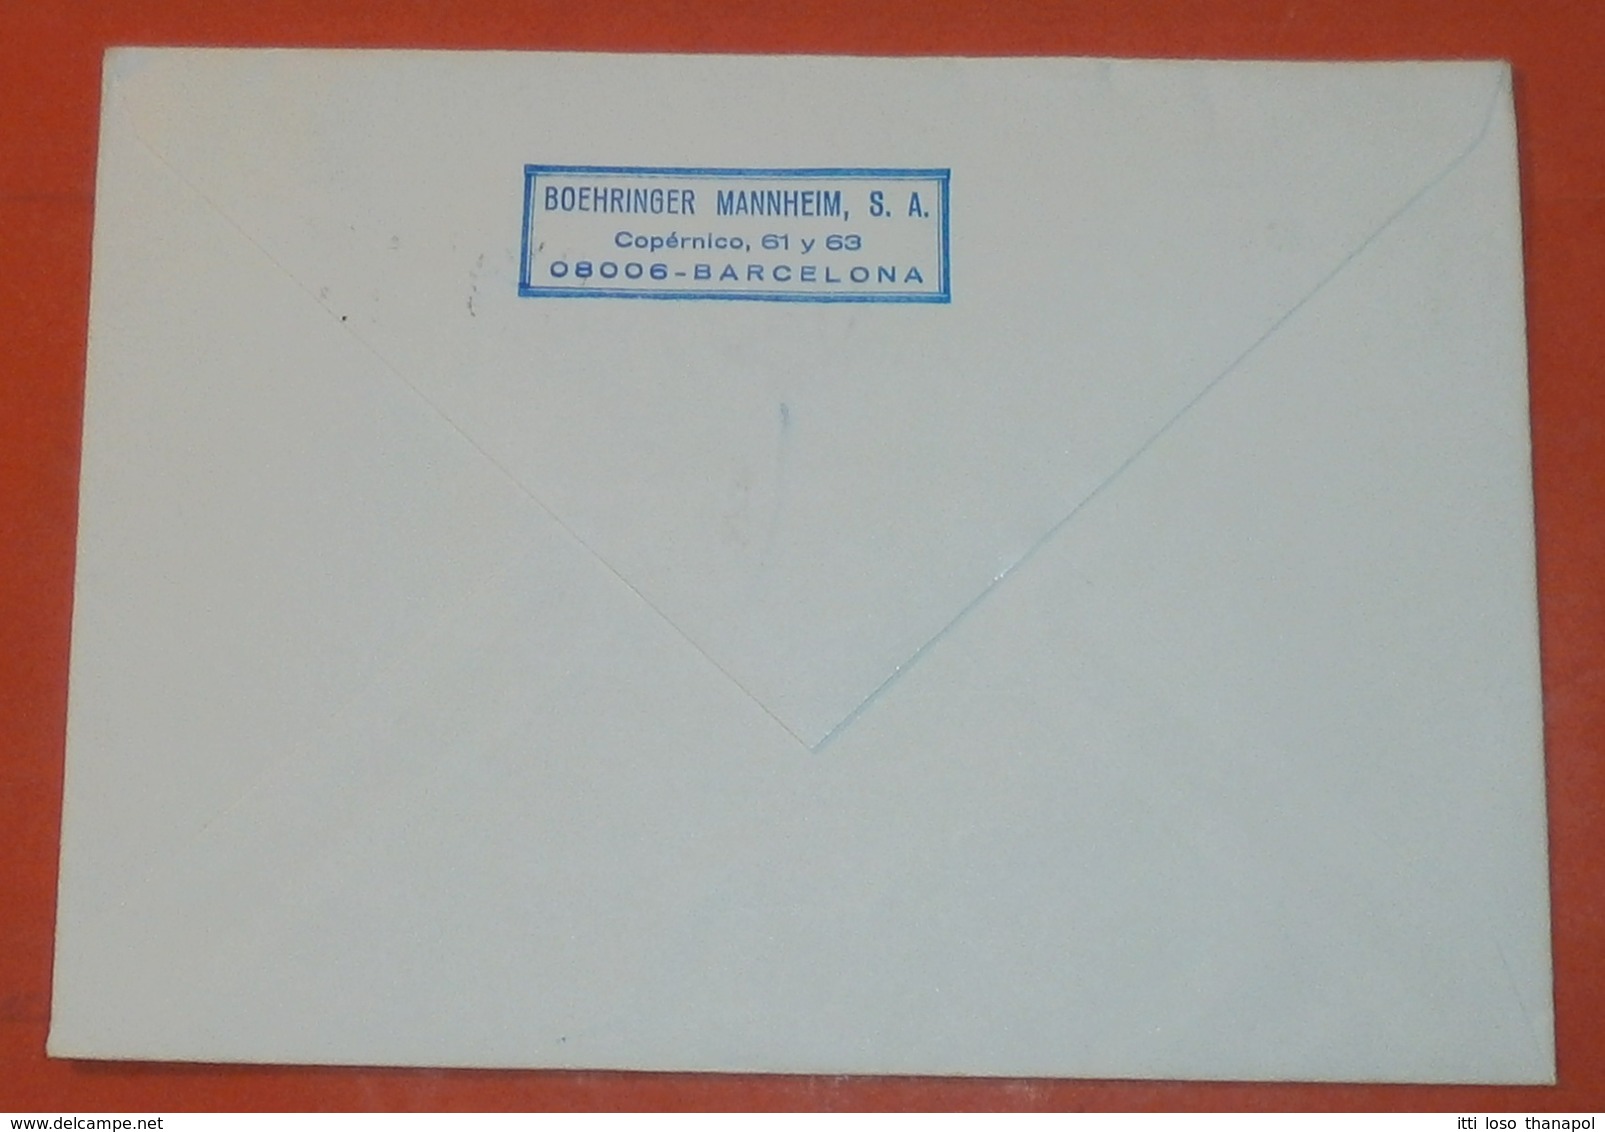 SPANIEN 2703 Weihnachten -- Barcelona 20.12.1985 -- Boehninger Mannheim S.A. -- Brief Cover (2 Foto)(37836) - Covers & Documents